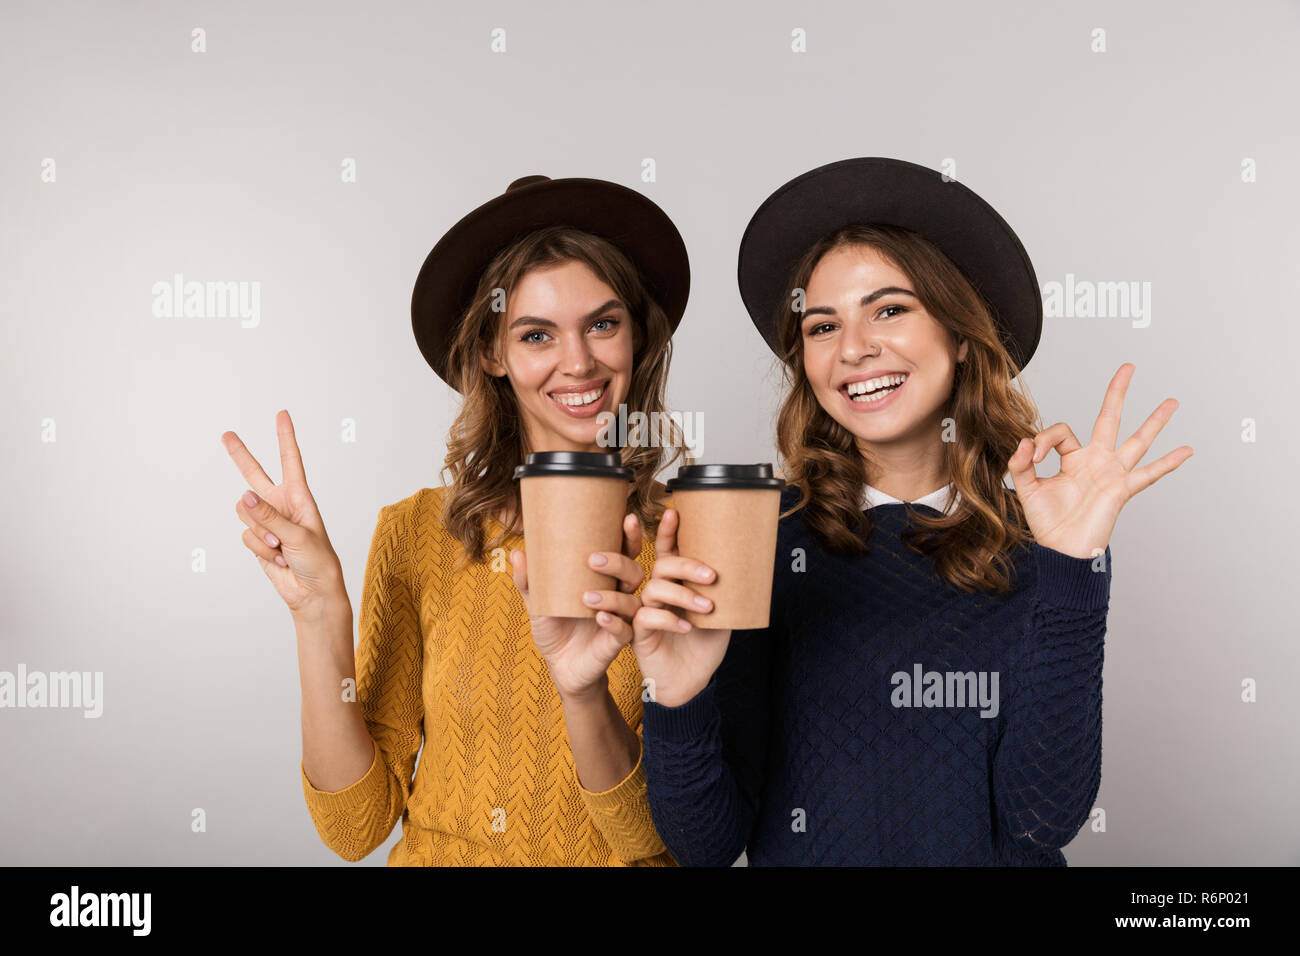 Immagine delle due donne positive indossando cappelli azienda caffè da asporto isolate su uno sfondo grigio Foto Stock